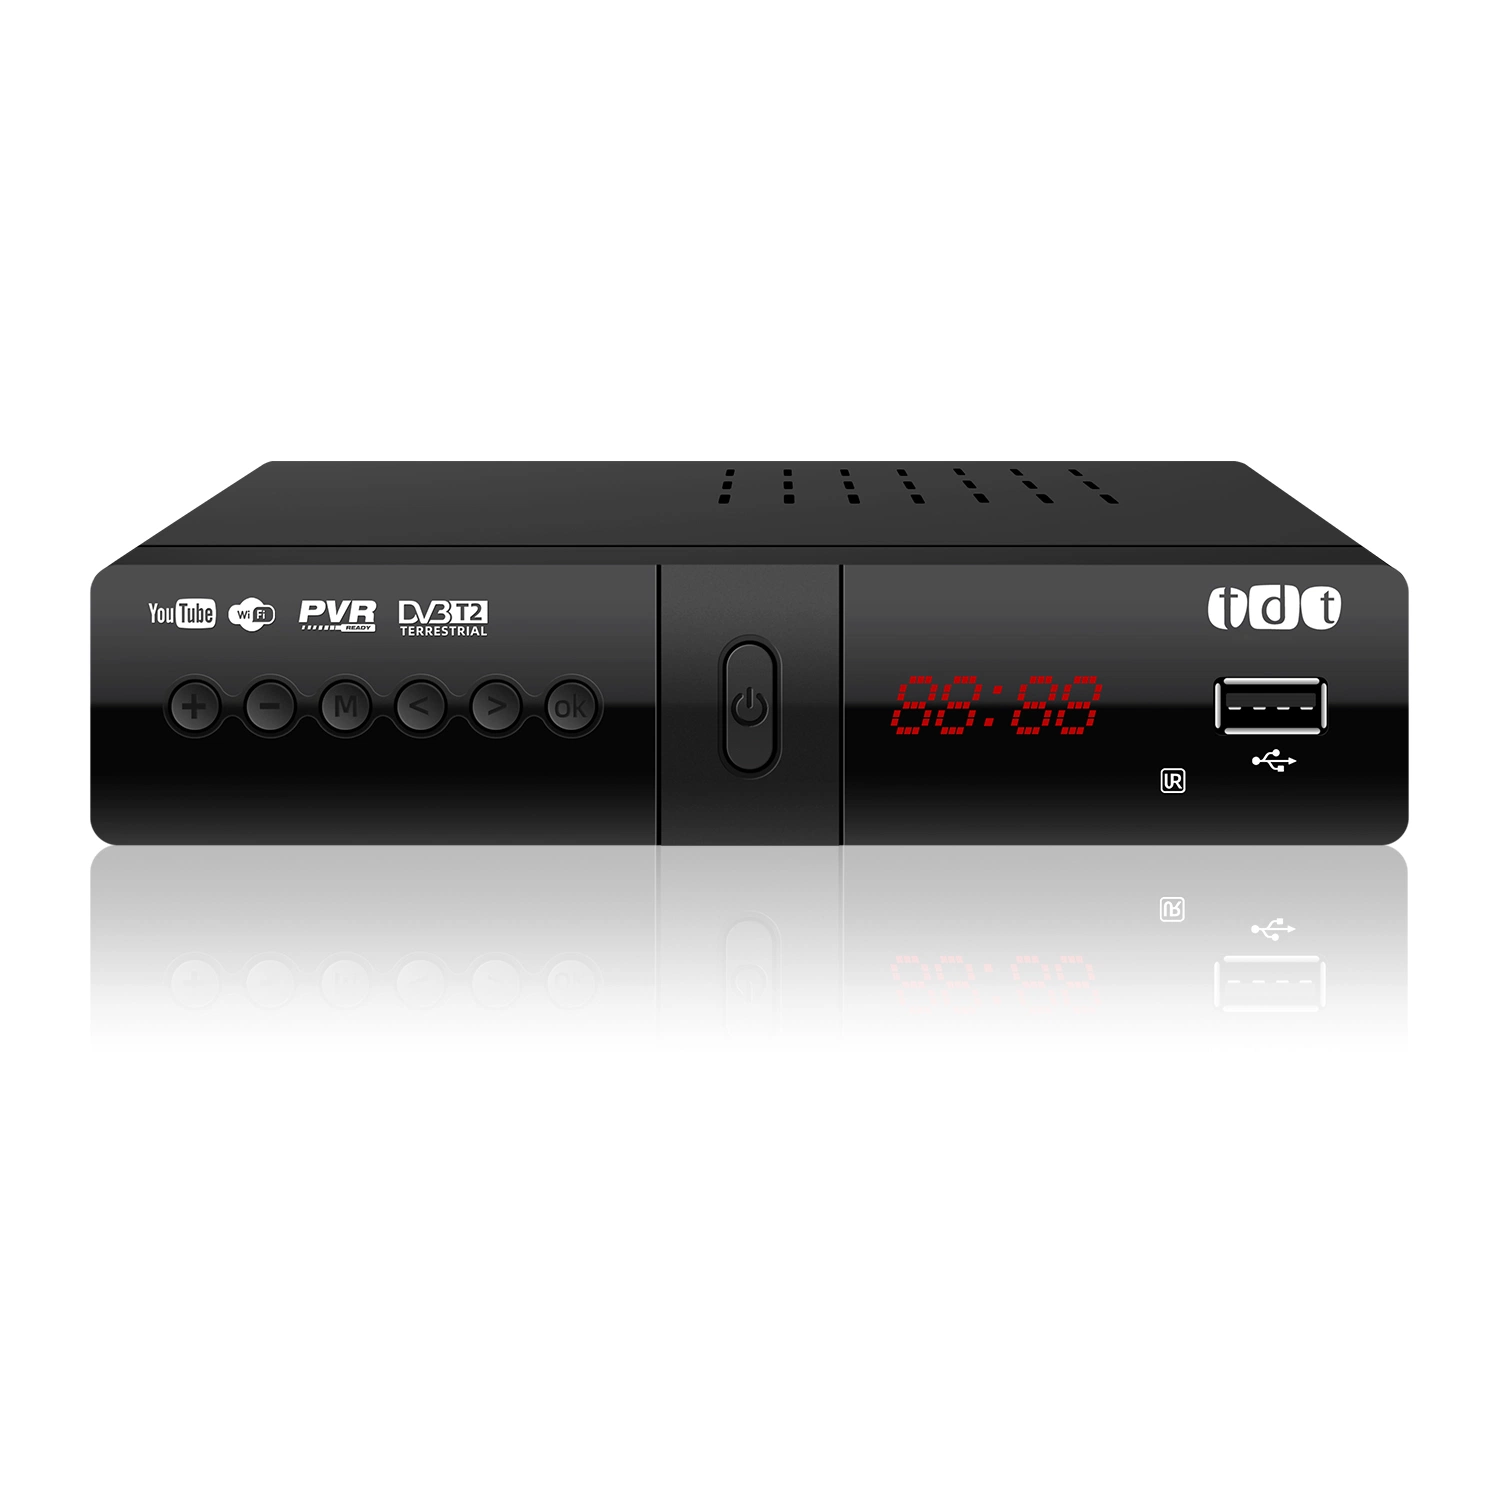 Venda a quente Set top box DVB T2 receptor terrestre DVB-T2 Tdt para mercado Colômbia MPEG-2/-4